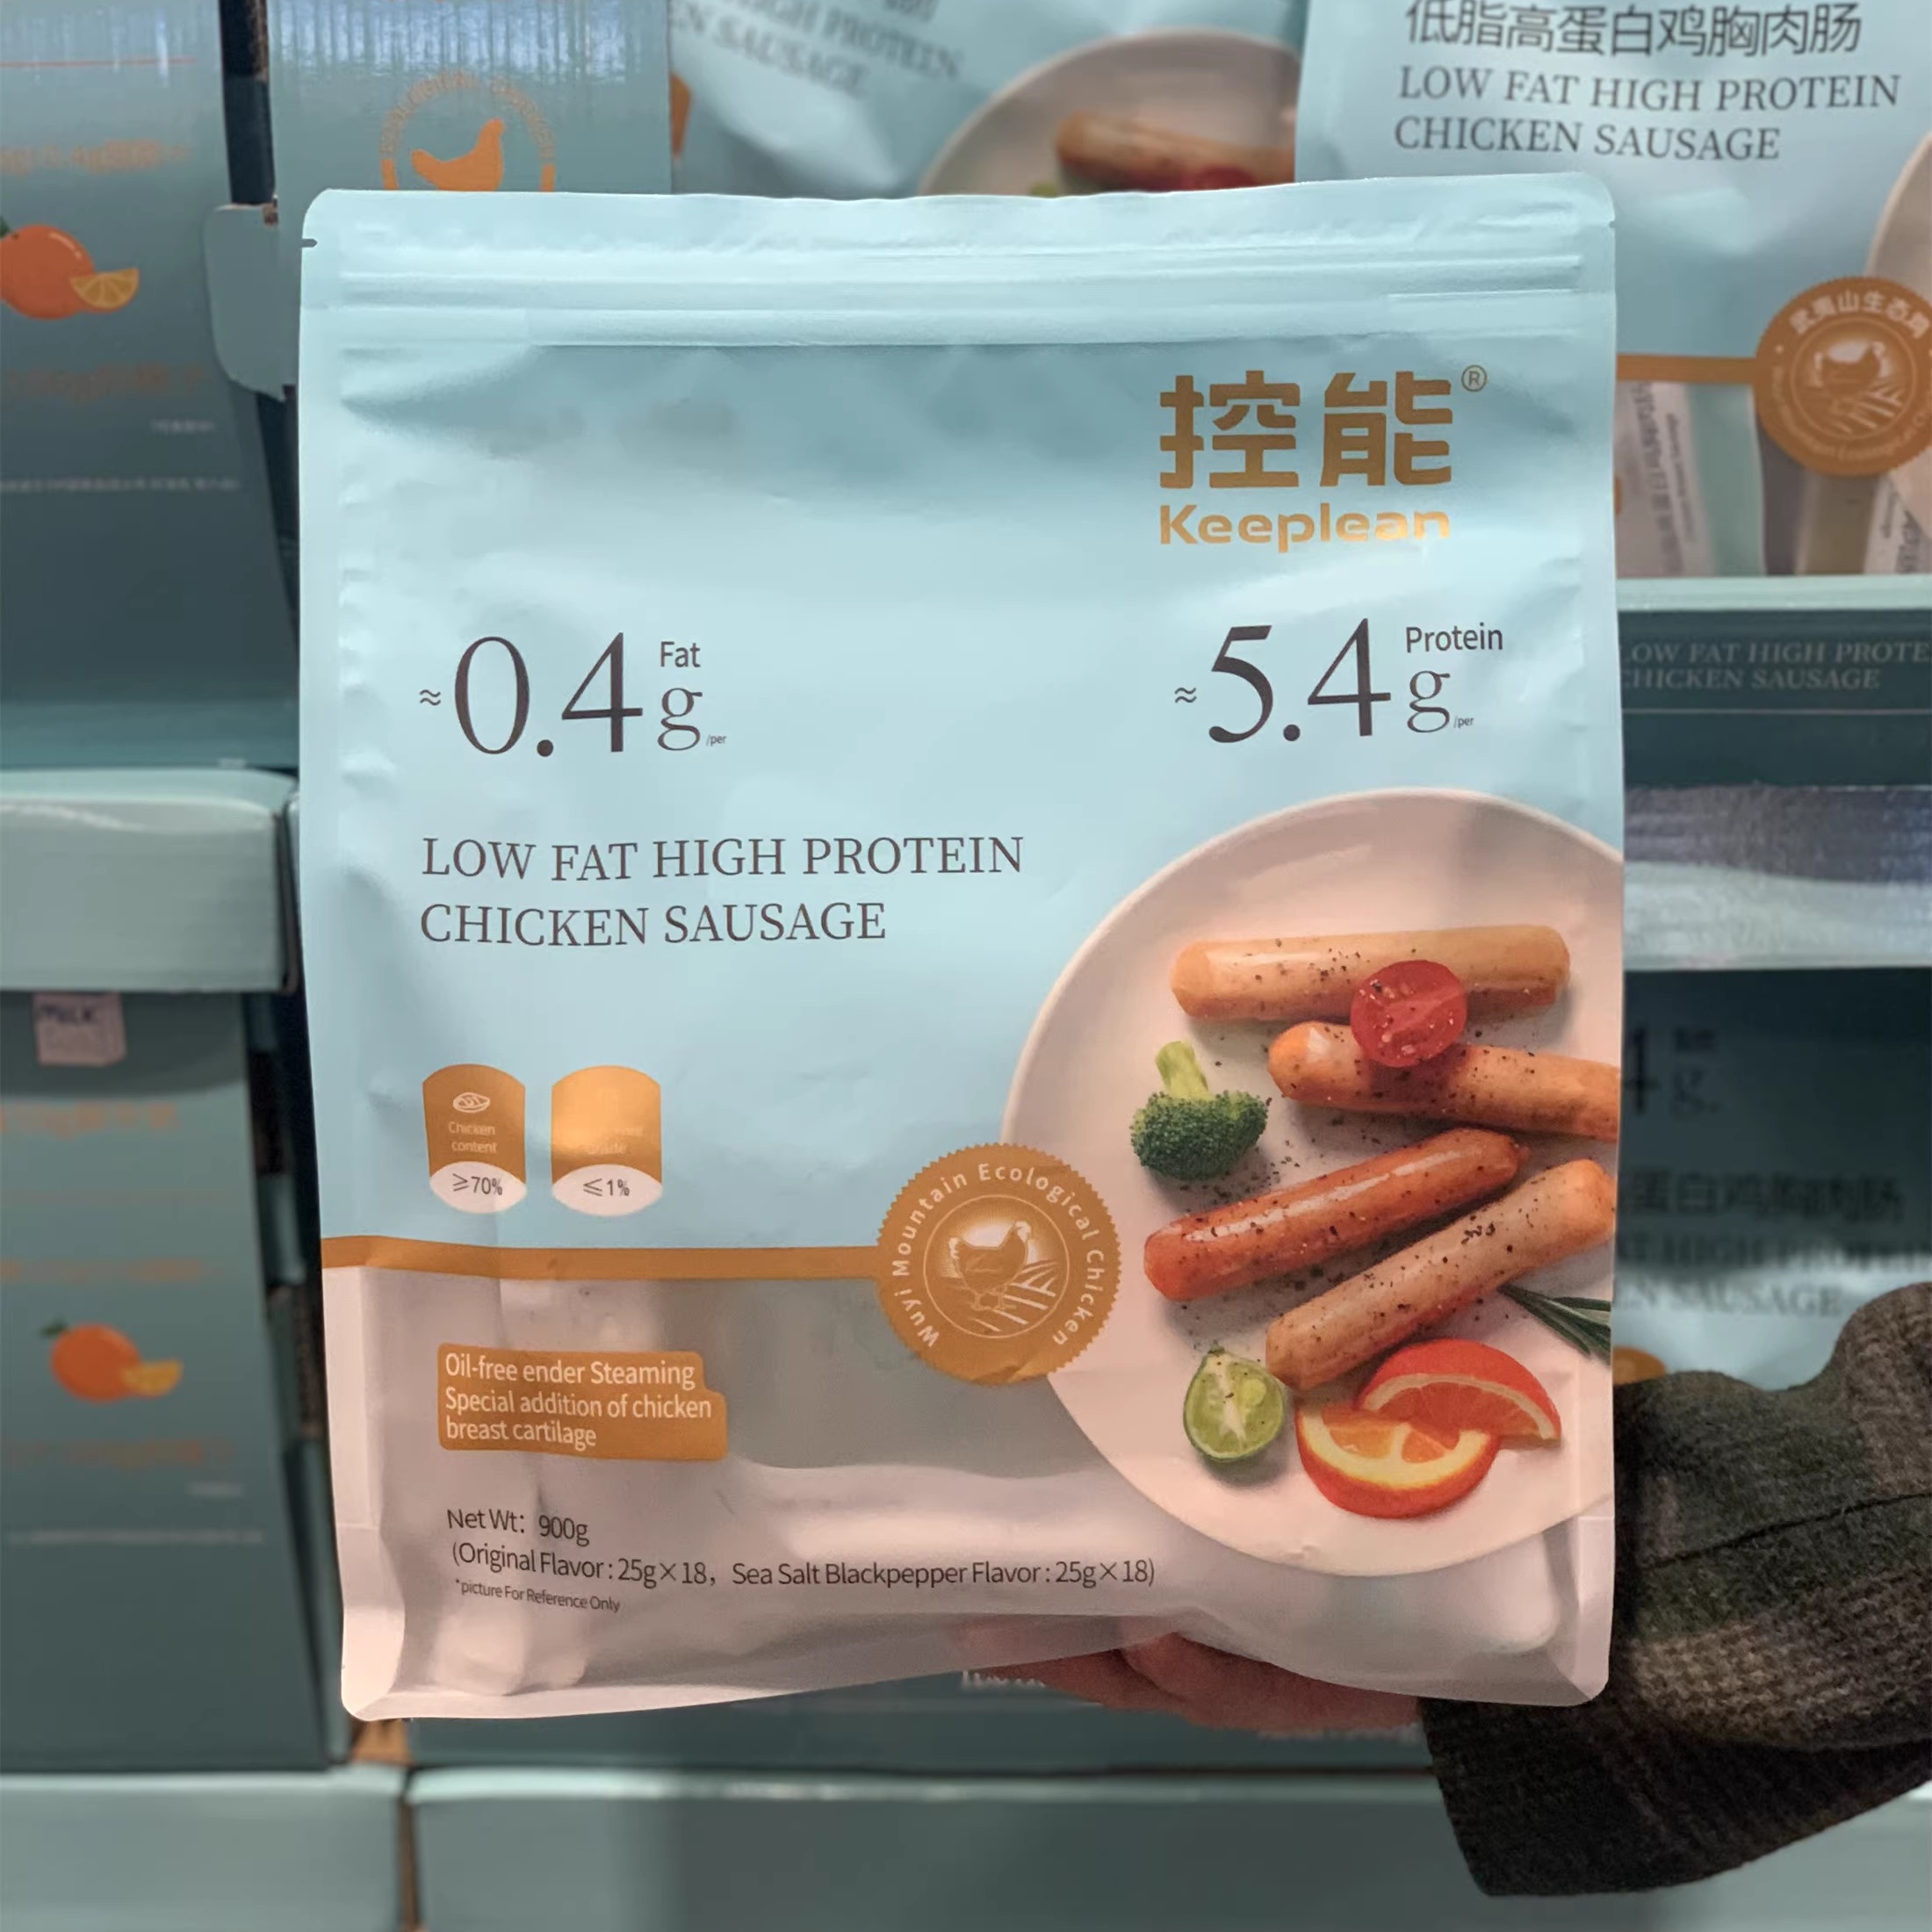 米姐开市客控能低脂高蛋白鸡胸肉肠900克36小包(原味+海盐黑胡椒)